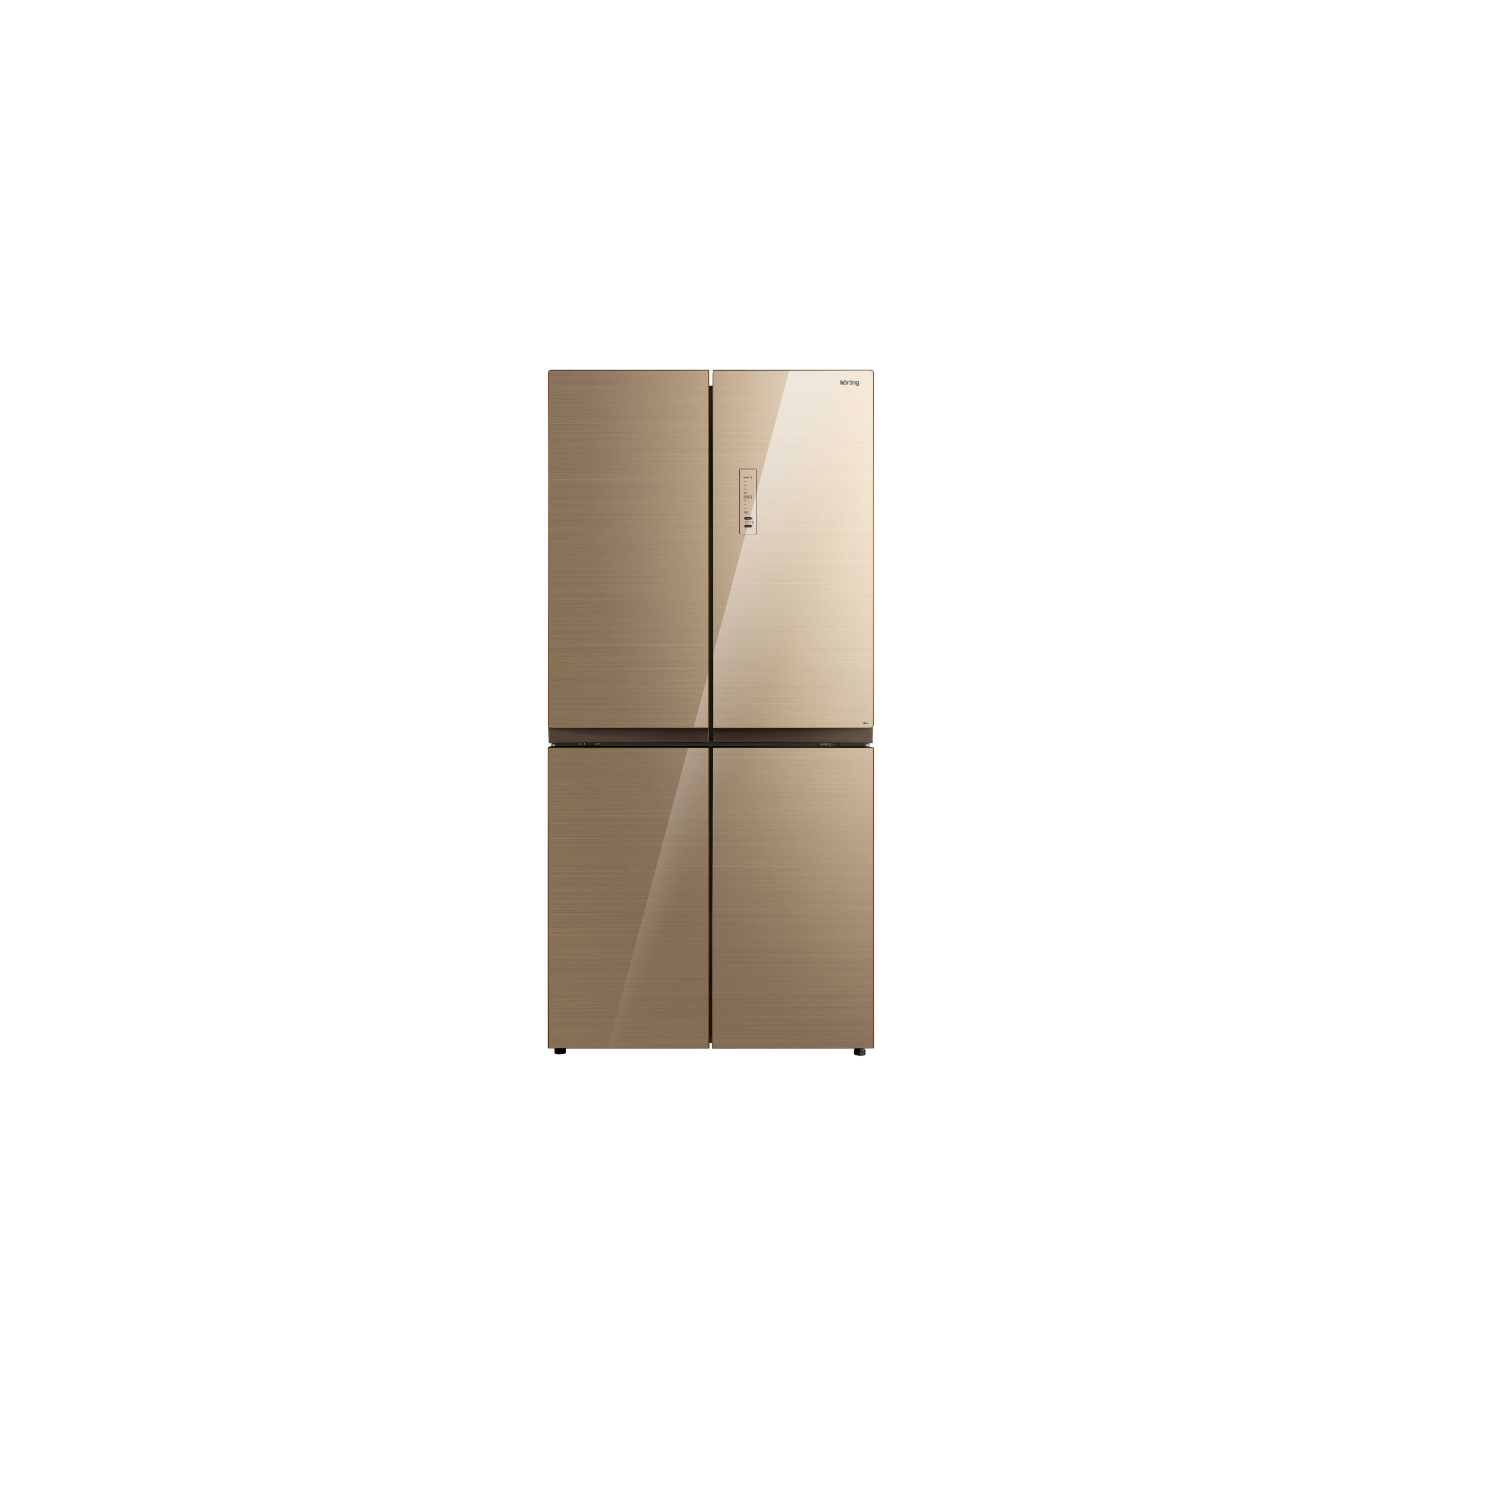 Многокамерный холодильник Korting - фото №2